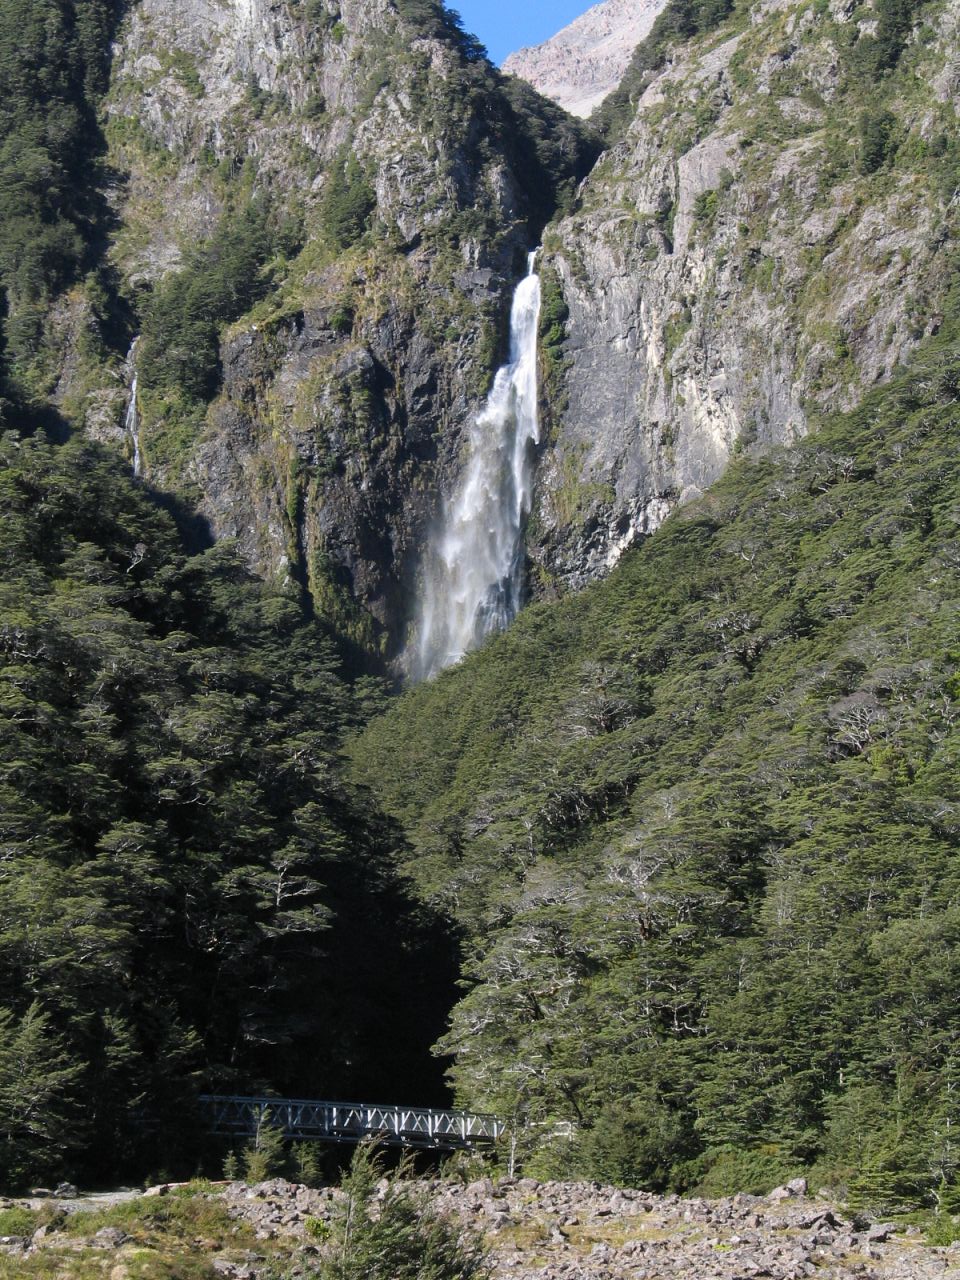 fotka / image 130 m vysok vodpd v Arthur's Pass, New Zealand, kolekce E